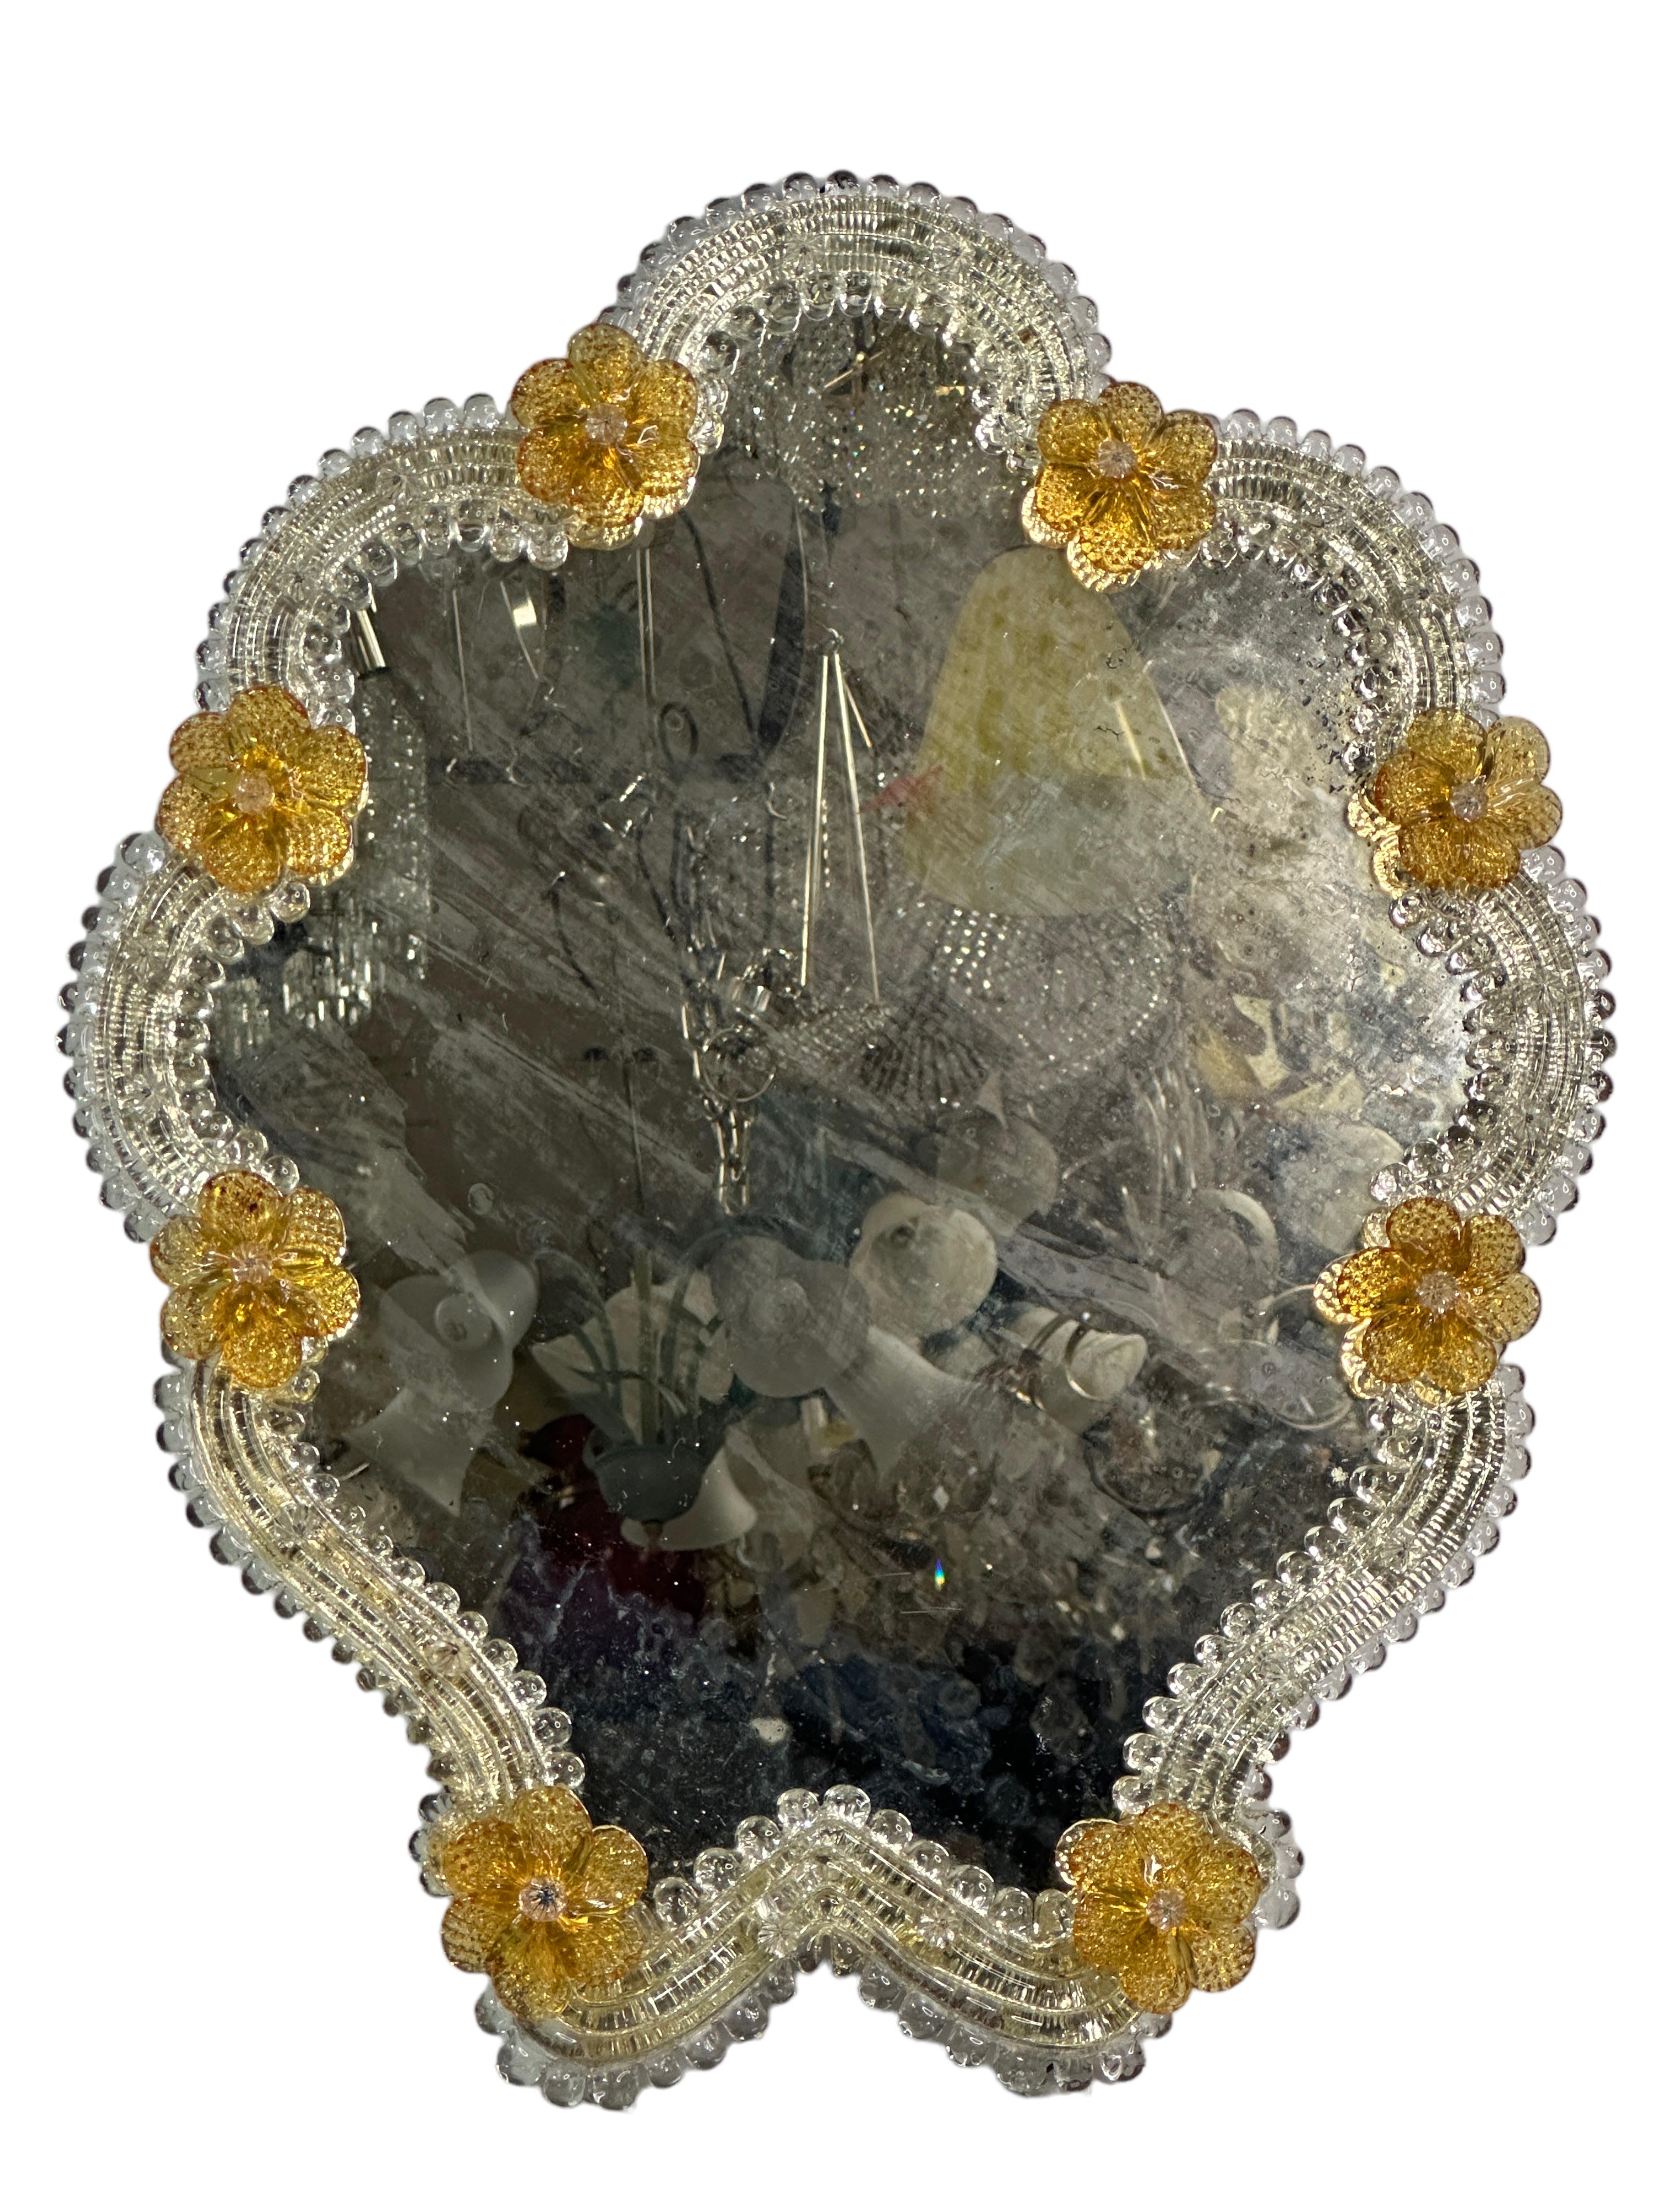 Ein atemberaubender mittelgroßer Murano-Glasspiegel, umgeben von handgefertigten Blumen aus bernsteinfarbenem Rauchglas. Alter ca. 1930 Jahre oder älter. Einige blinde Flecken und beschädigte Teile im Spiegel, aber das ist das Alter. Mit alters- und